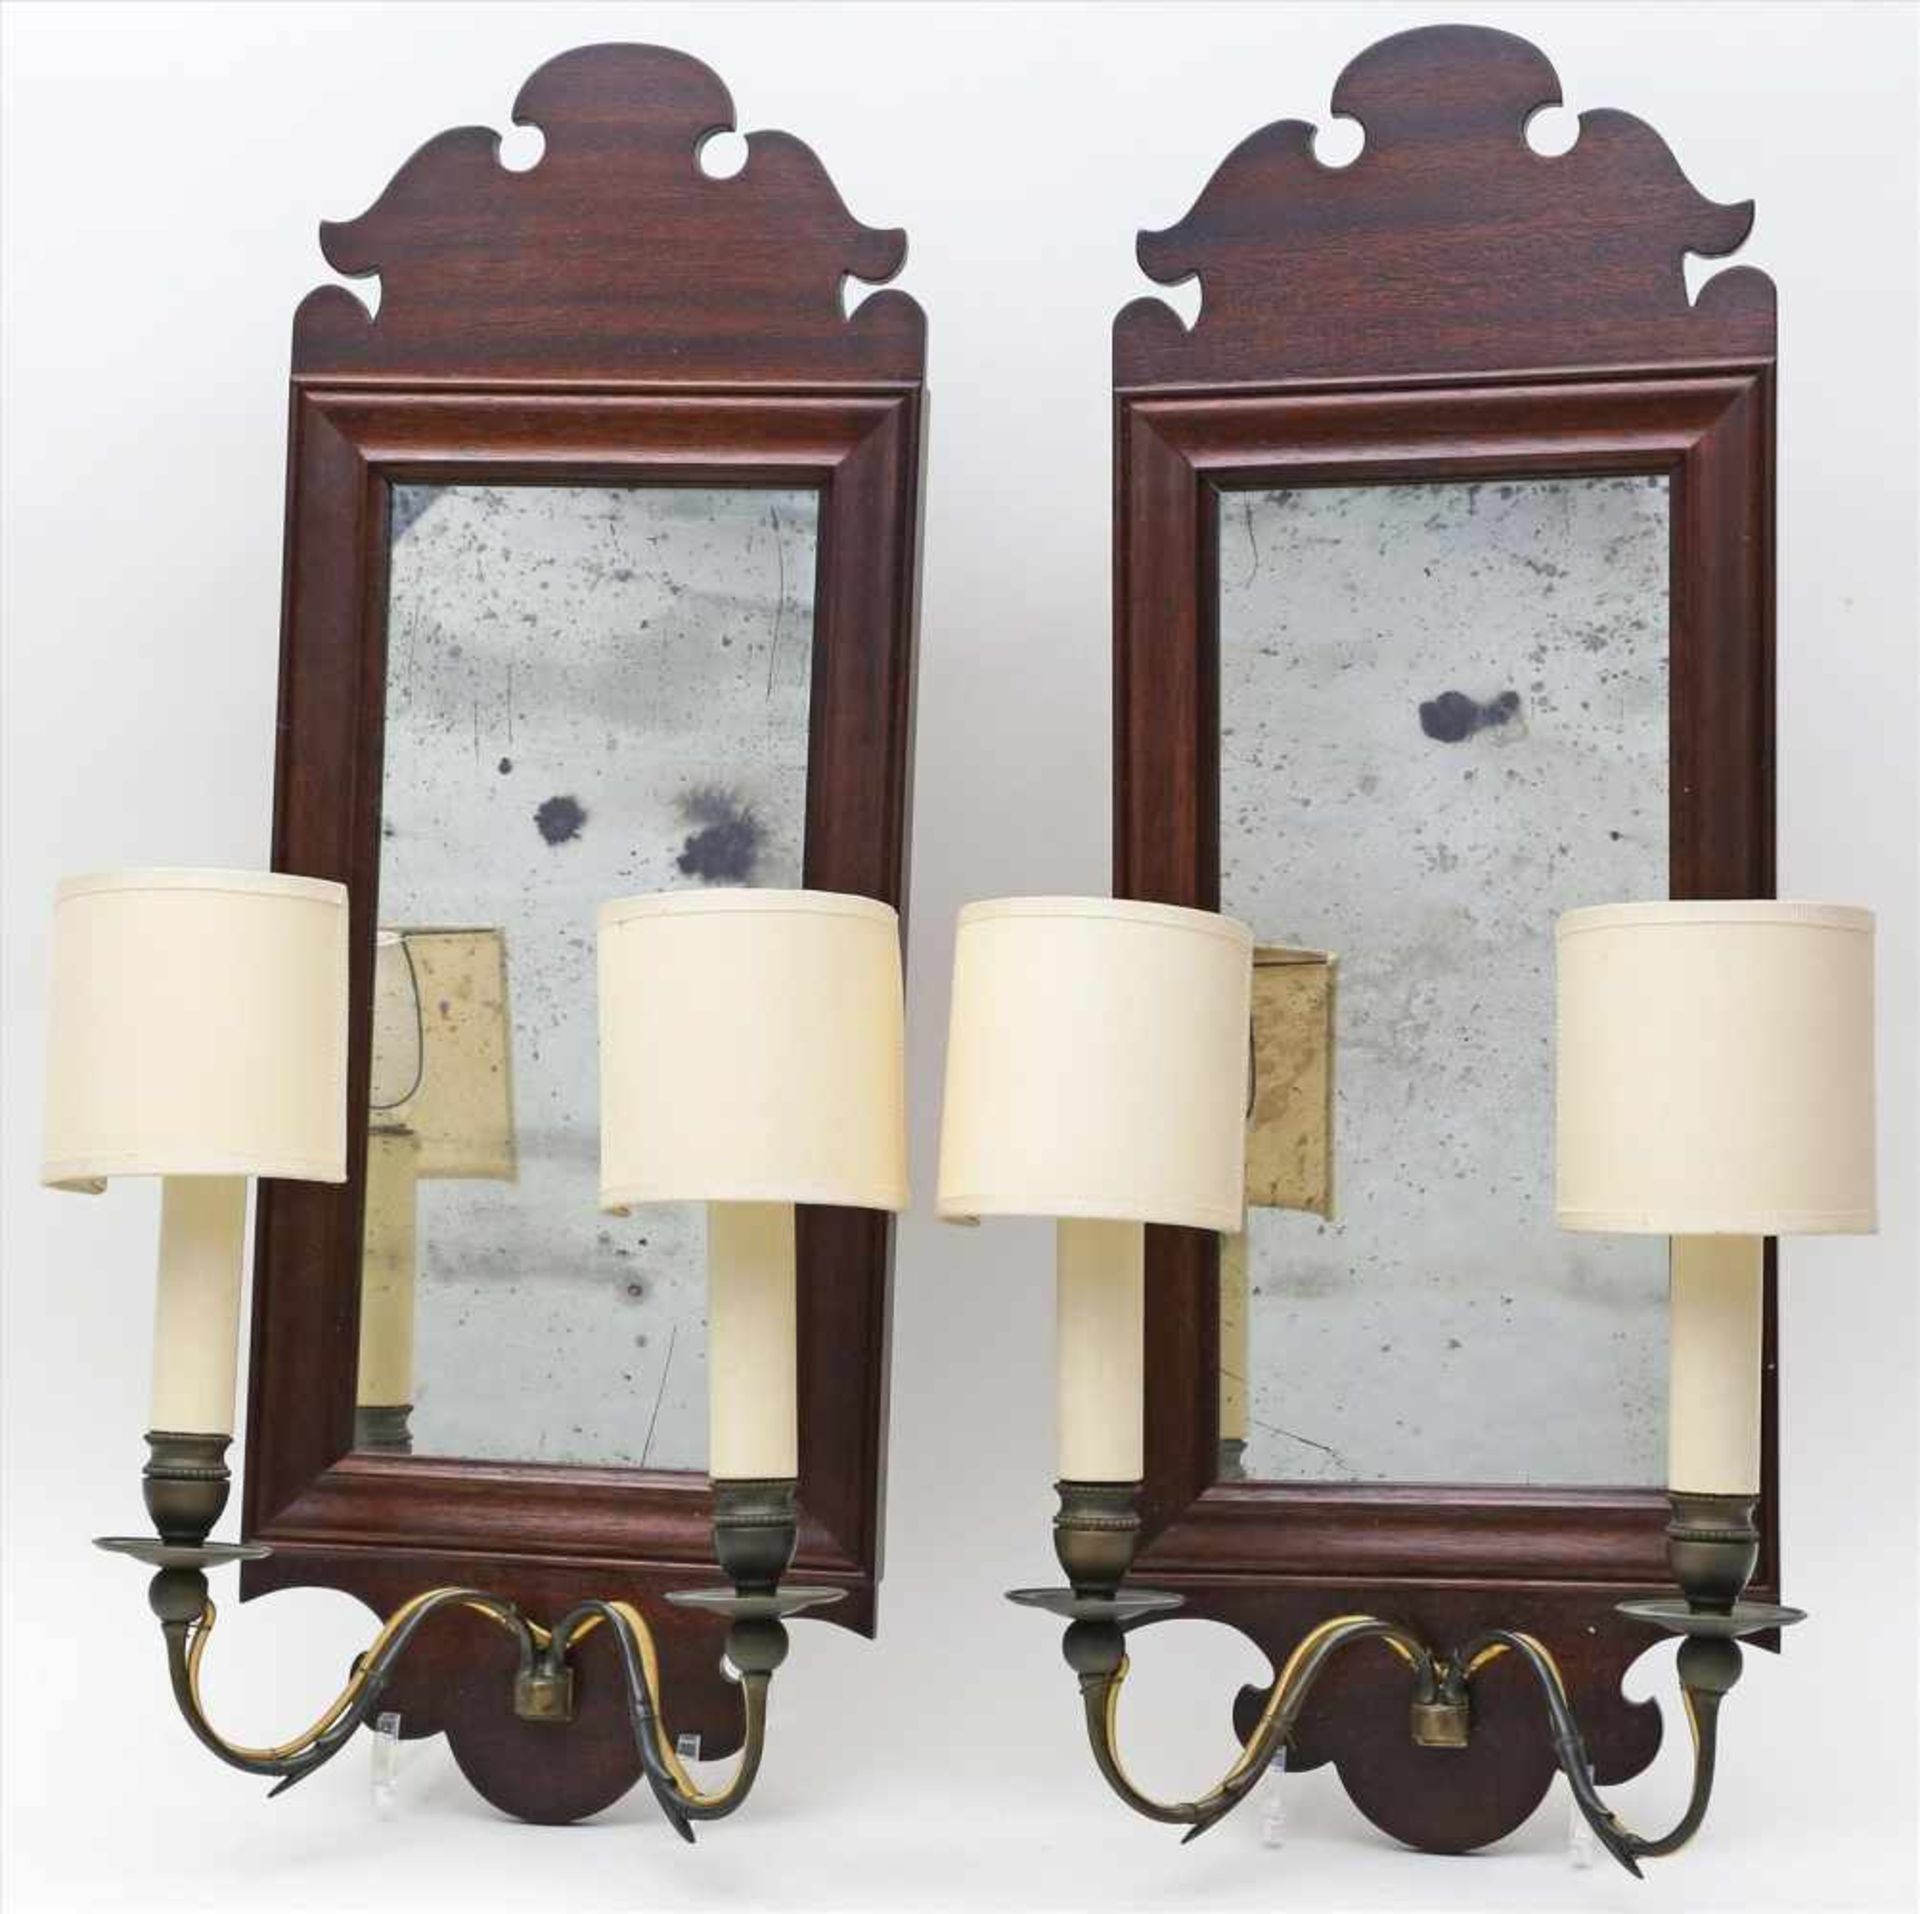 Paar kleine Wandspiegel mit Beleuchtung (20. Jh.).Mahagonirahmen mit 2-flammigen Leuchtermontagen.